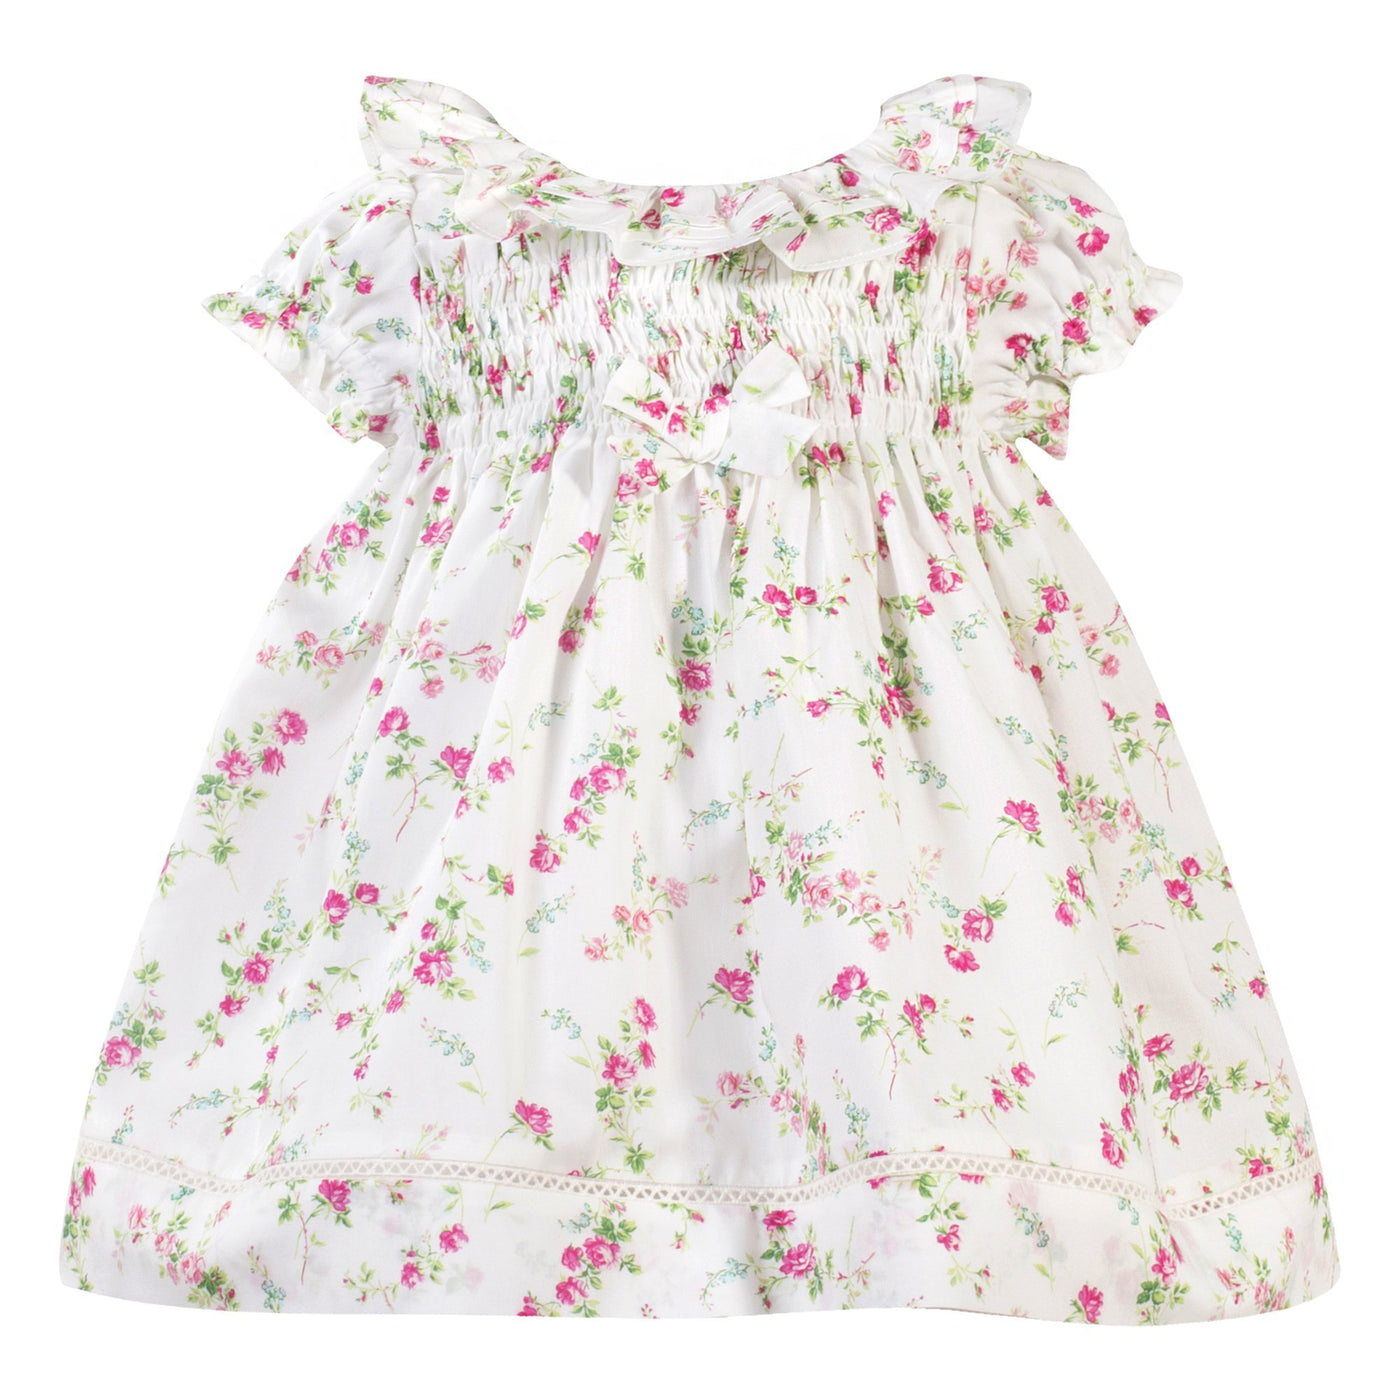 Patachou Liberty Floral Baby Girl Woven Dress | HONEYPIEKIDS | Kids ...